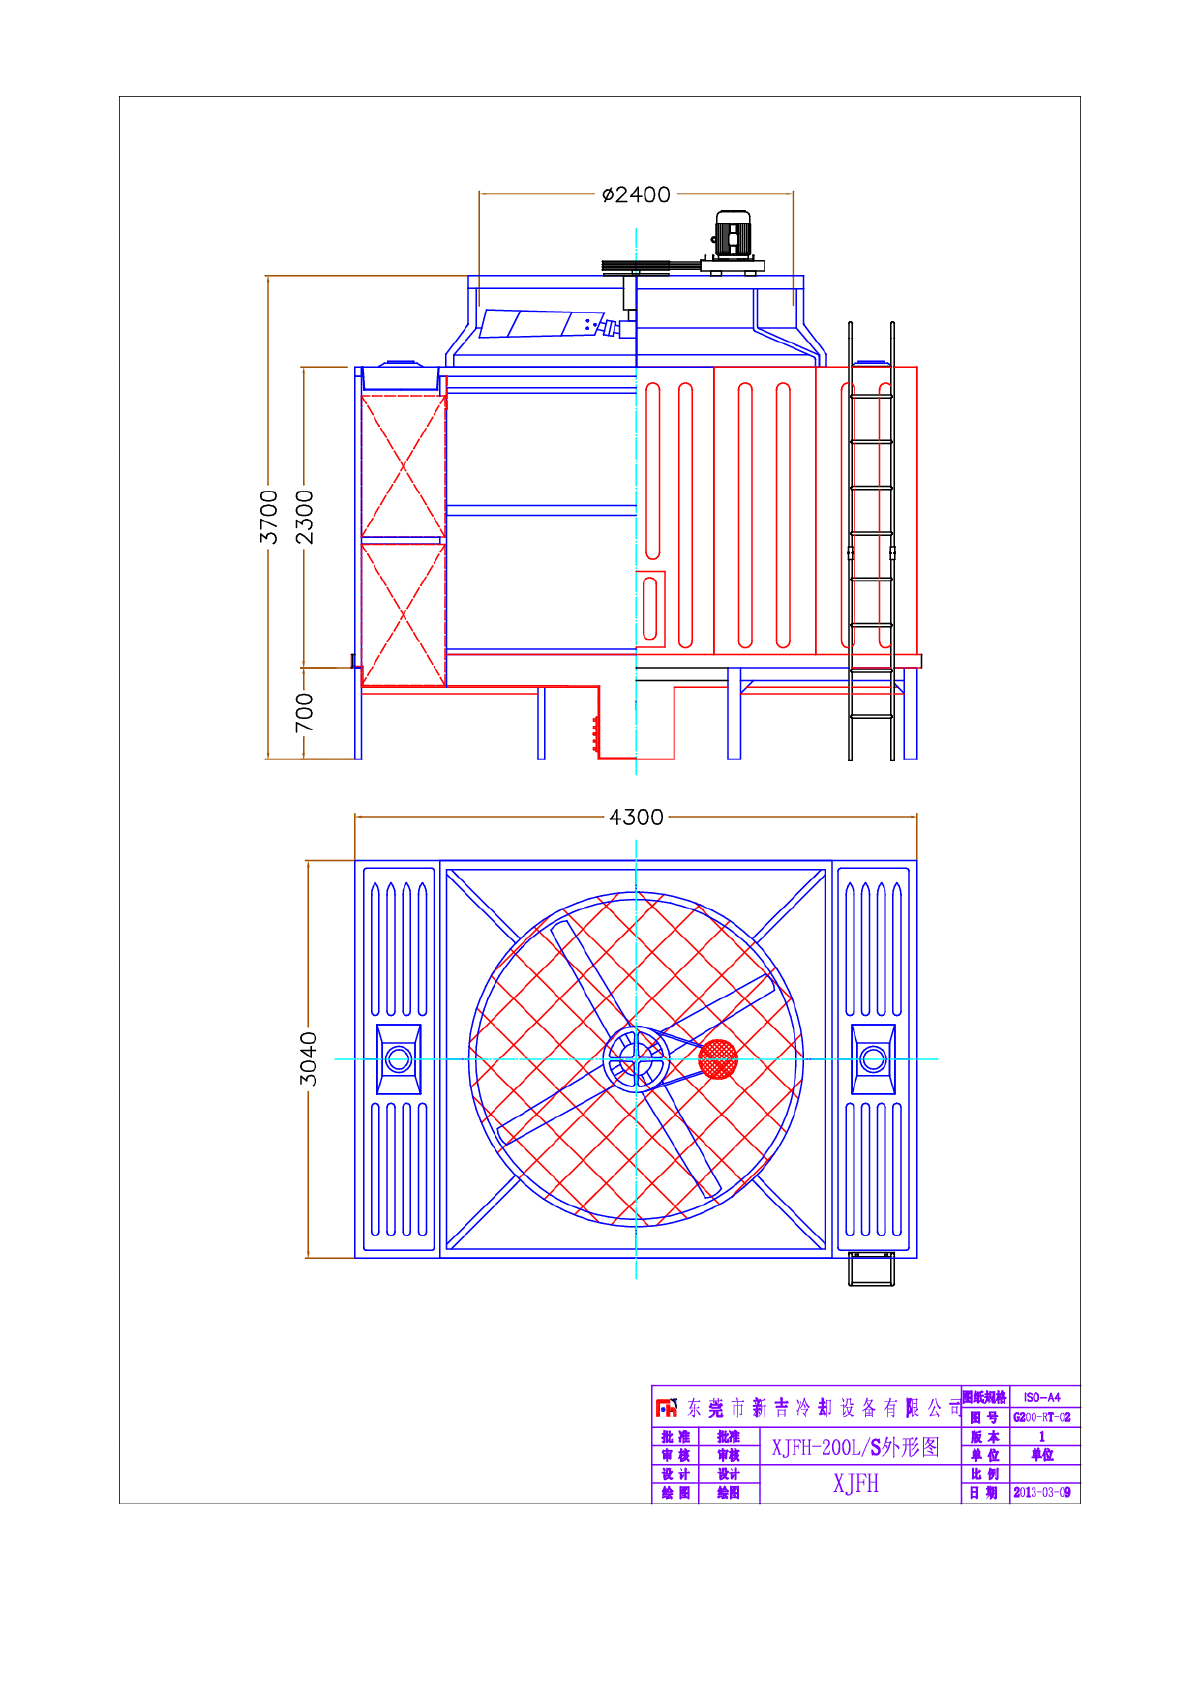 XJFH-200吨横流式方形冷却塔图纸